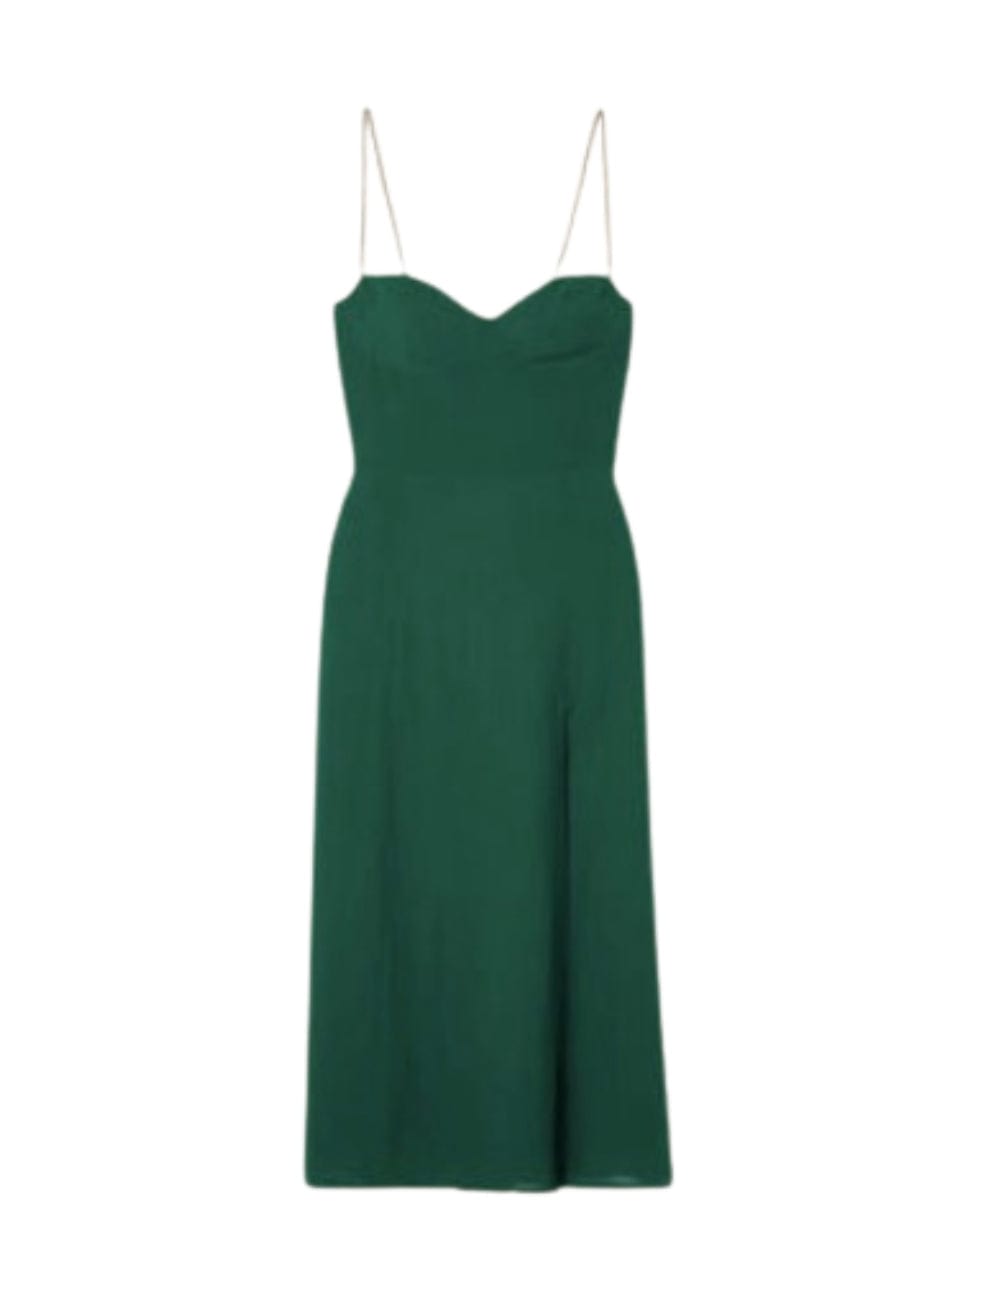 Juilette Dress in Green